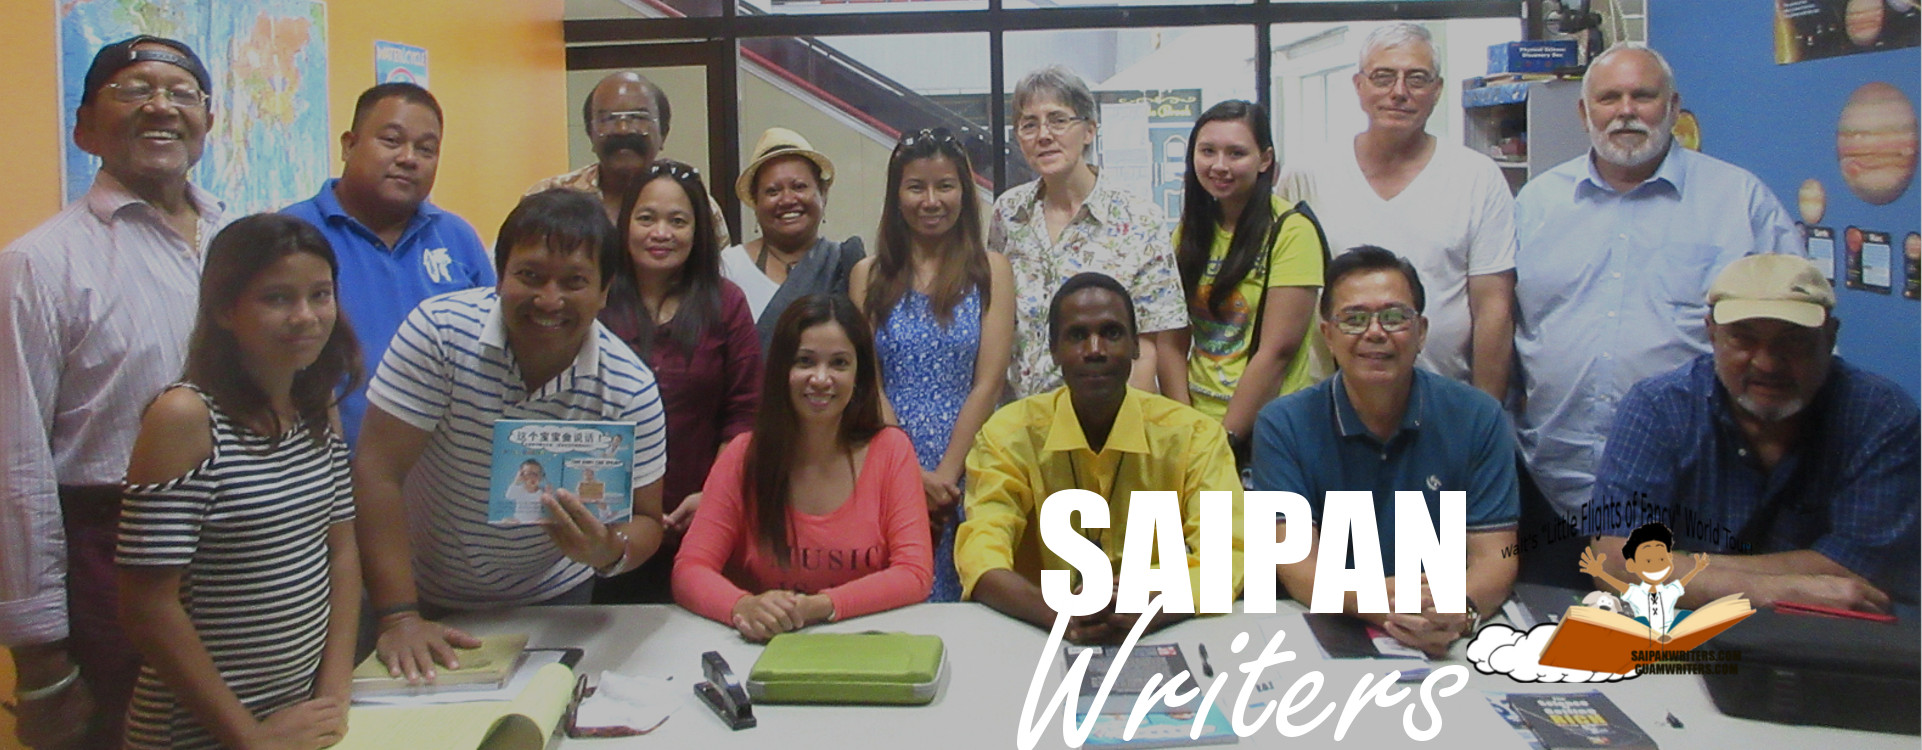 (c) Saipanwriters.com